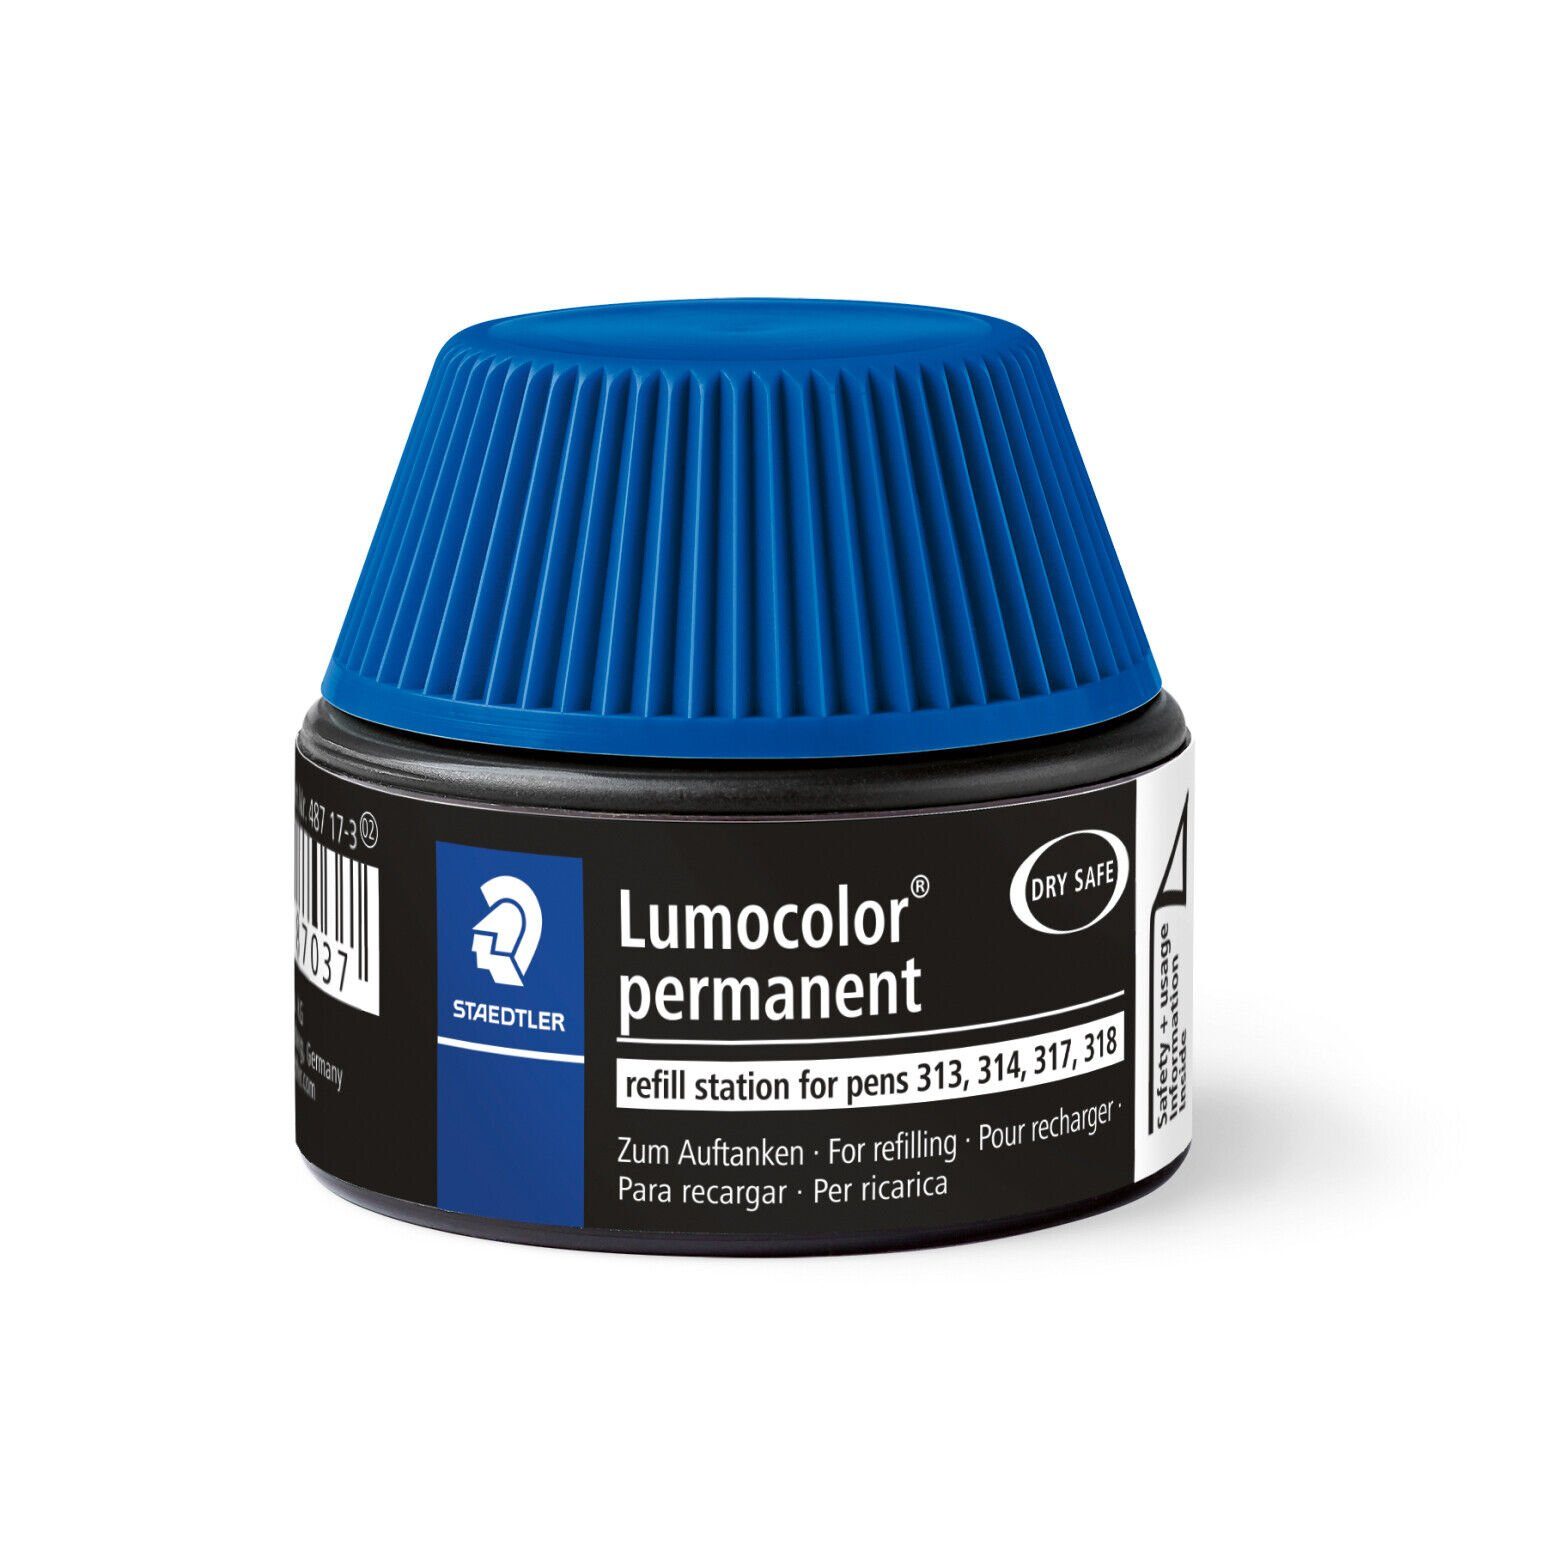 STAEDTLER Marker STAEDTLER Nachfülltinte Lumocolor® Refill permanent 487 17-3 blau, wasserfest, lichtbeständig